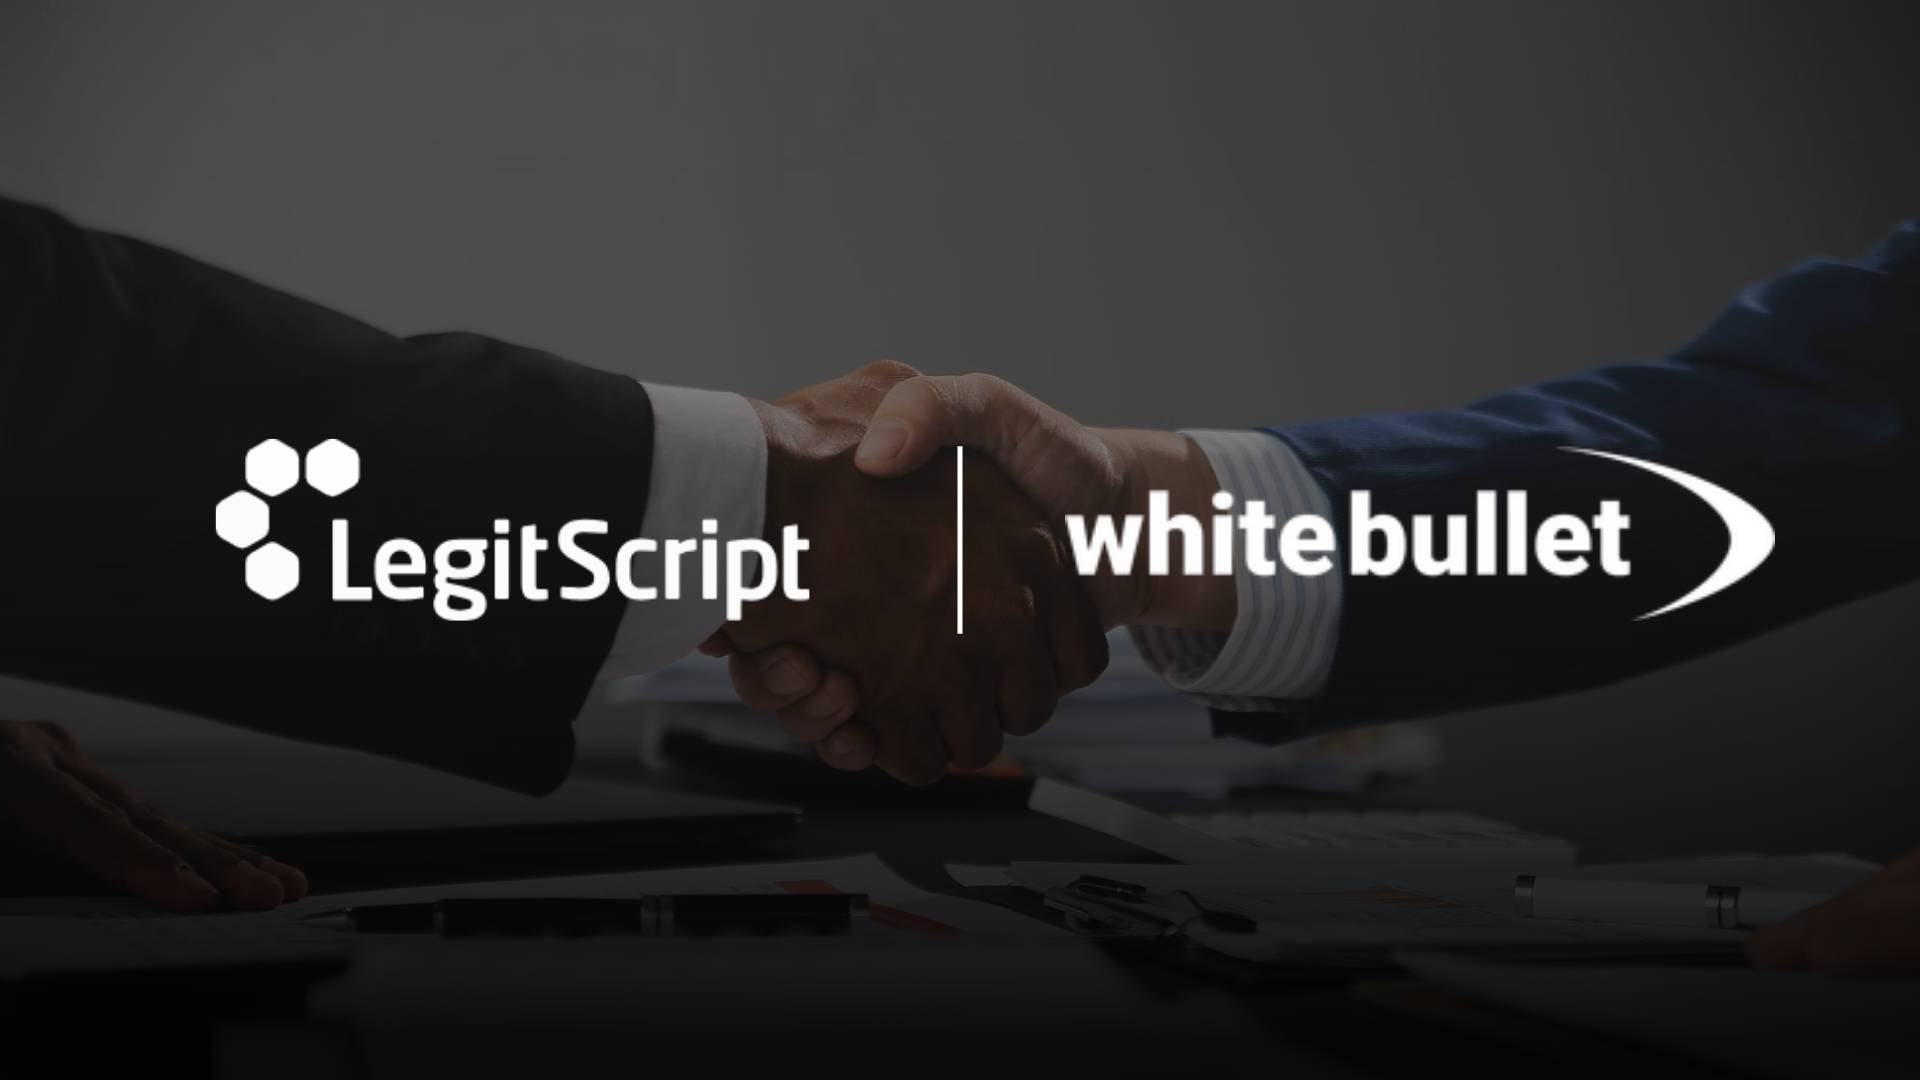 Strengthening E-Commerce Security: LegitScript's Partnership with White Bullet